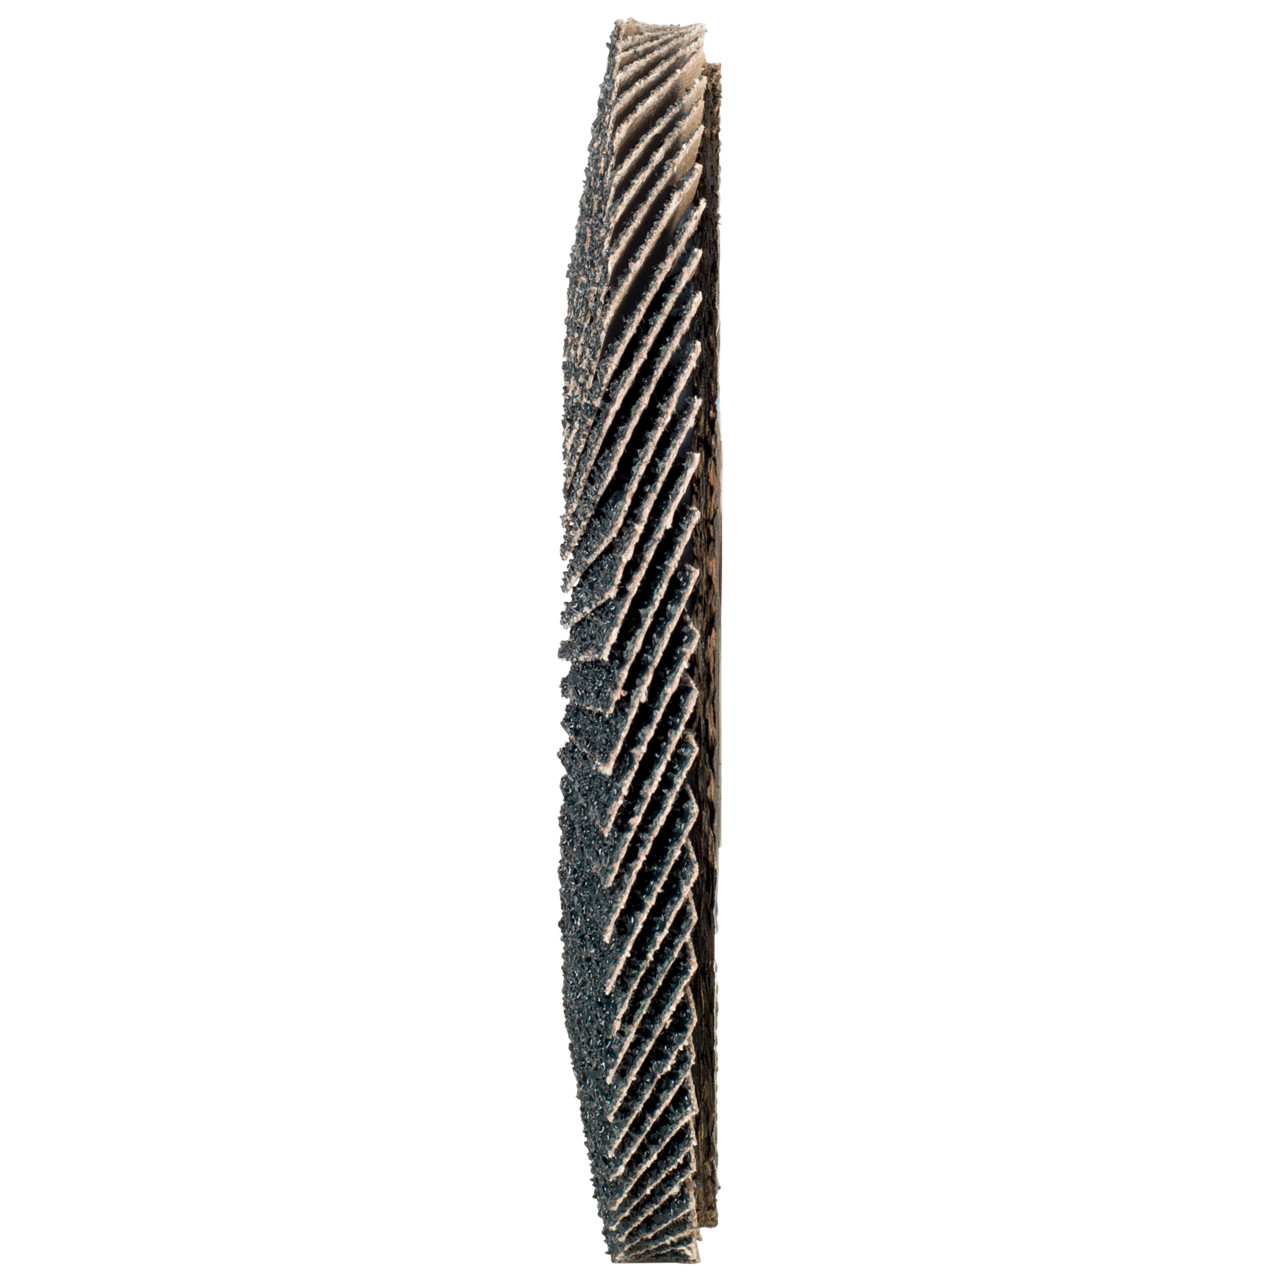 Rondella dentata Tyrolit DxH 125x22.2 2in1 per acciaio e acciaio inox, P40, forma: 28A - versione diritta (versione con corpo portante in fibra di vetro), Art. 668692